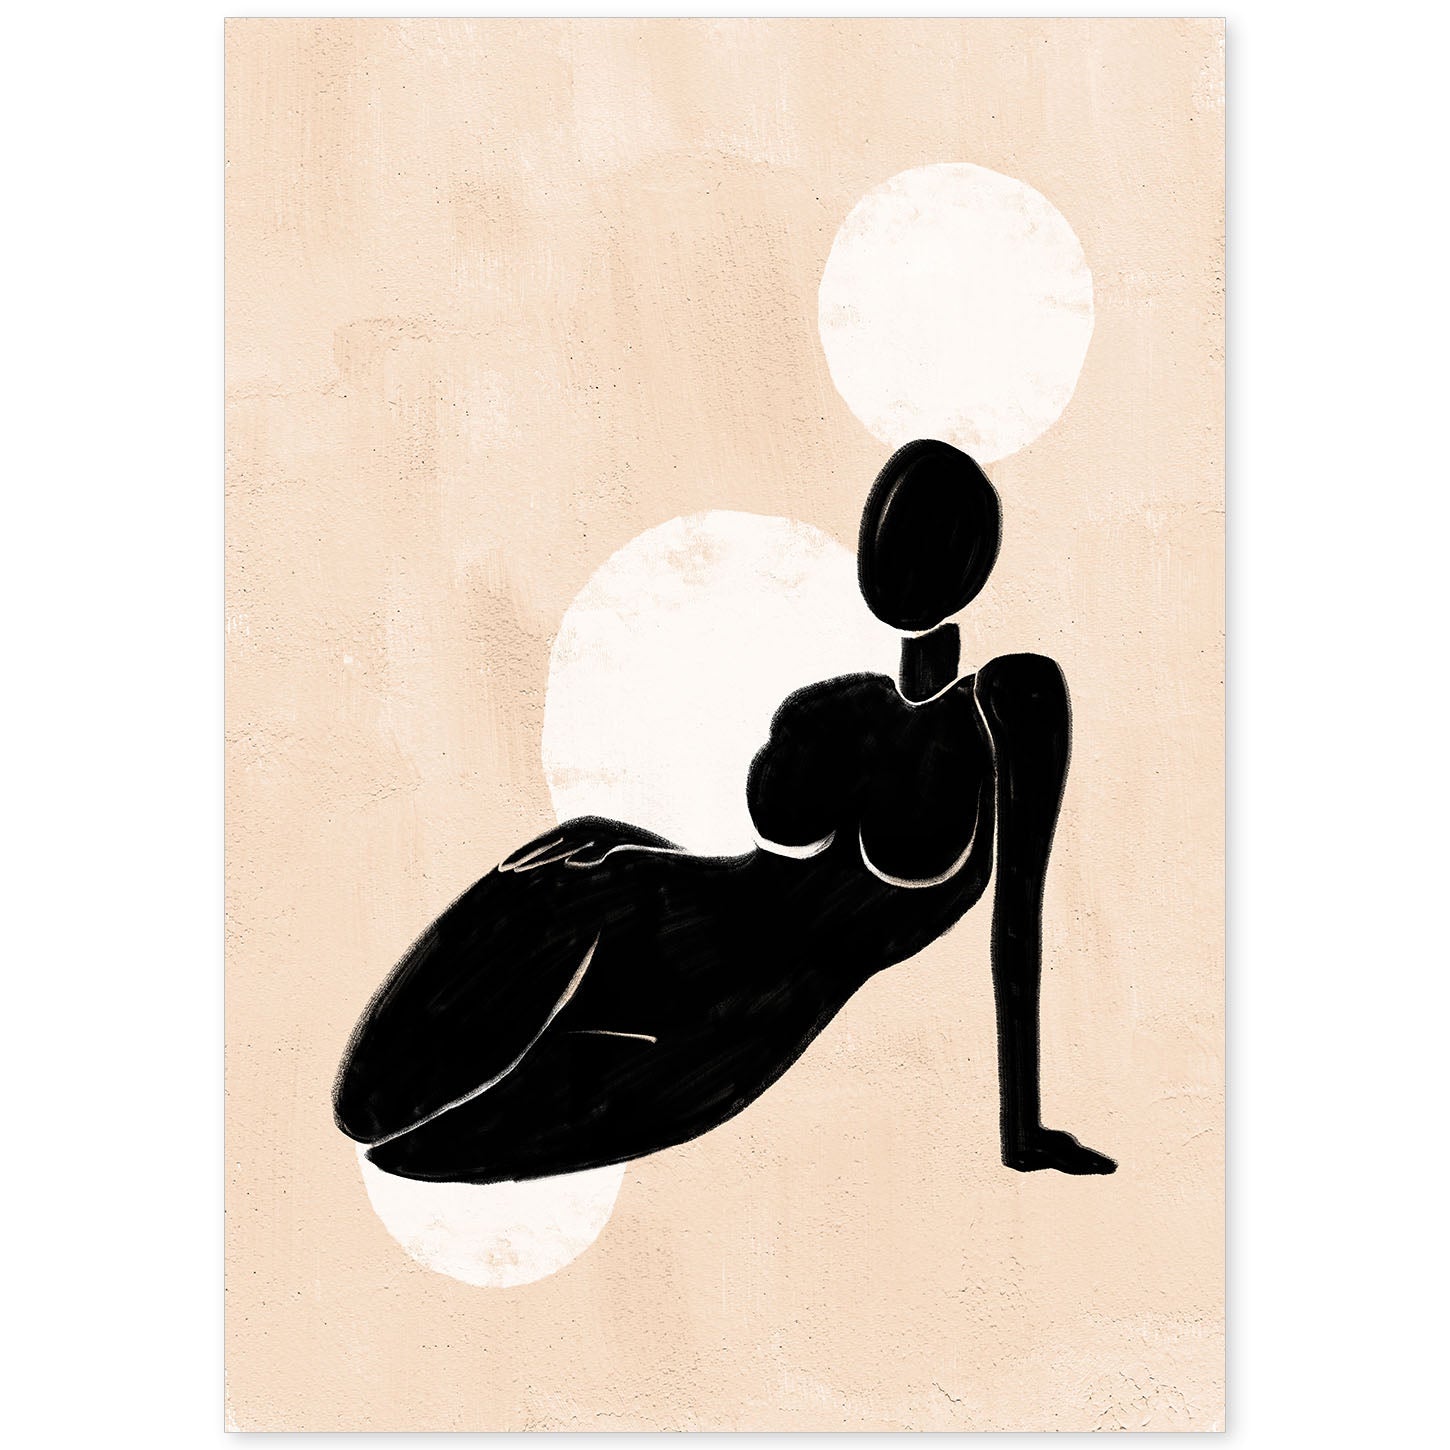 Poster con ilustracion de mujer. Dibujos con formas, caras, cuerpos y gestos de mujeres. 'Mujeres 8'.-Artwork-Nacnic-A4-Sin marco-Nacnic Estudio SL